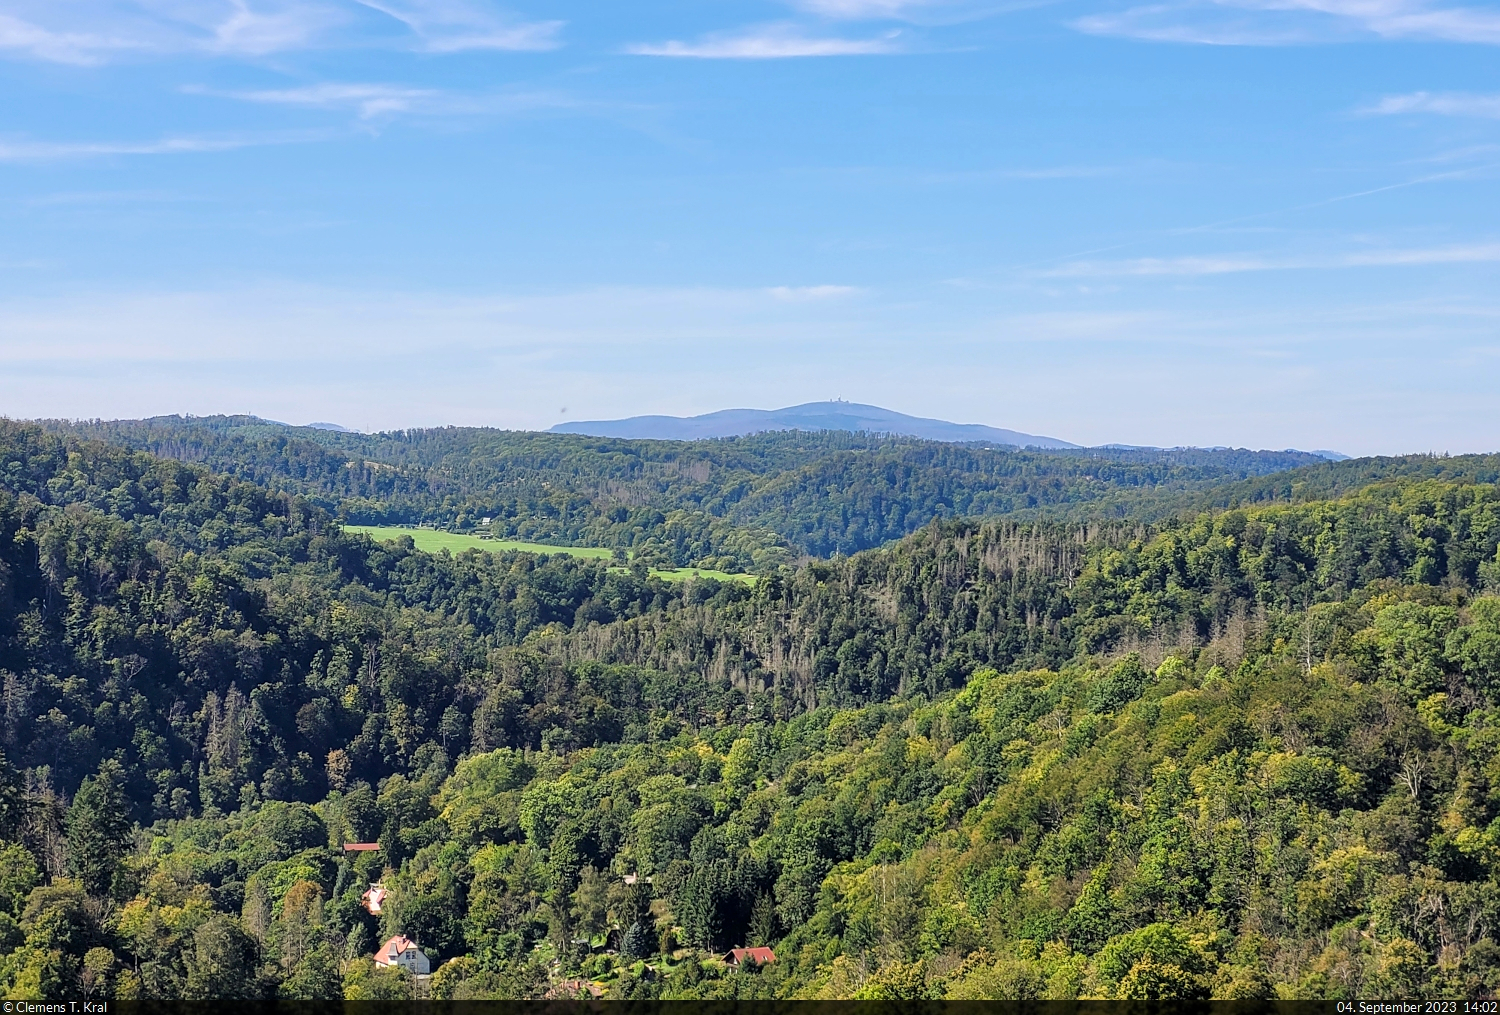 Vom Aussichtspunkt Weißer Hirsch bei Treseburg, Stempelstelle 67 der Harzer Wandernadel, kann man bis zum Brocken schauen.

🕓 4.9.2023 | 14:02 Uhr